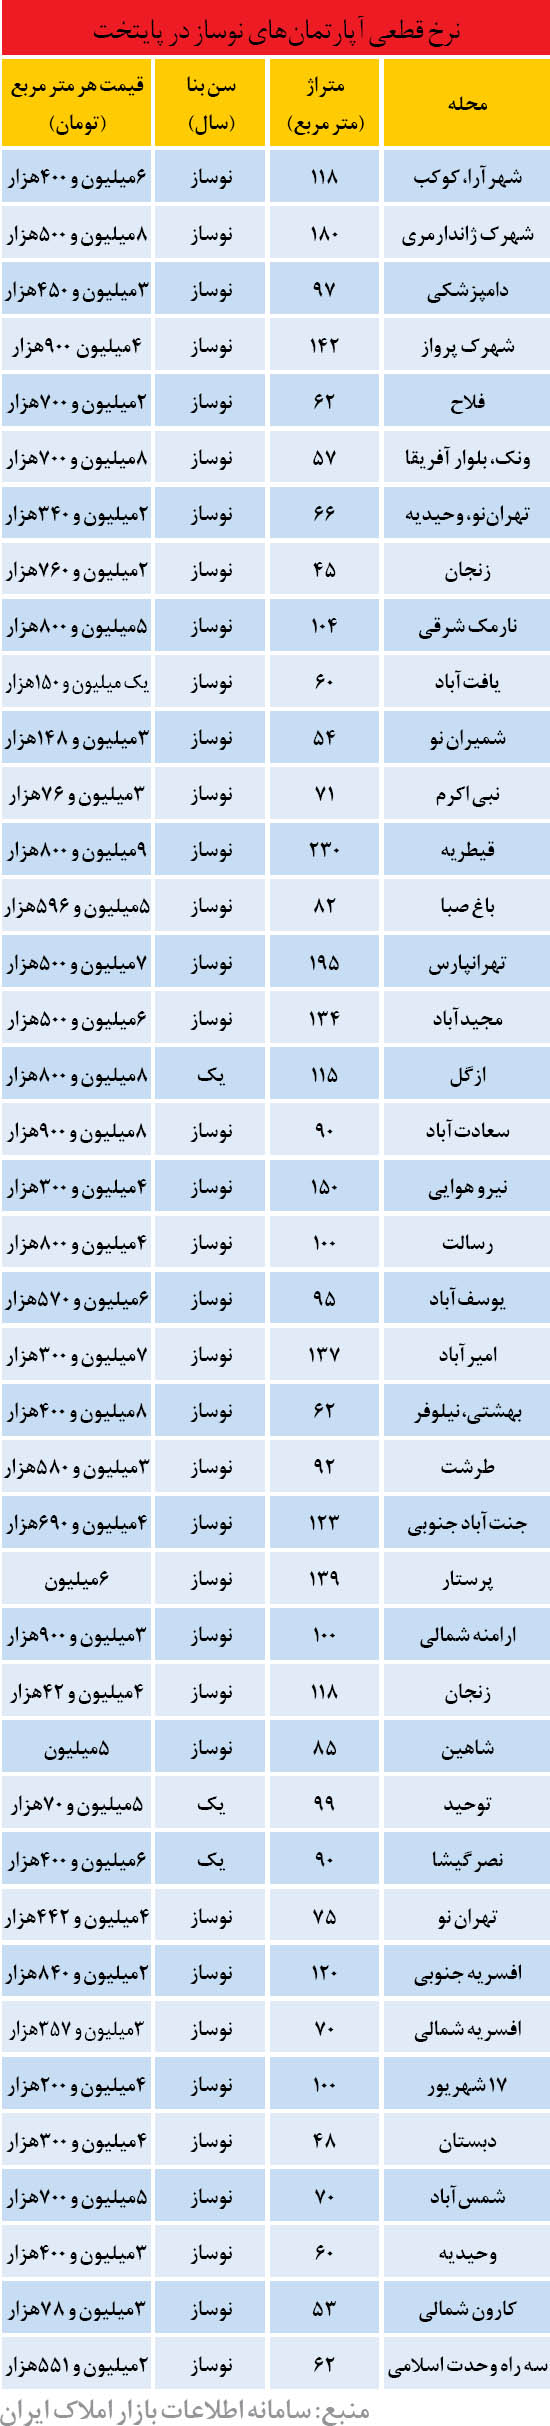 قیمت نوسازها در تهران (جدول)